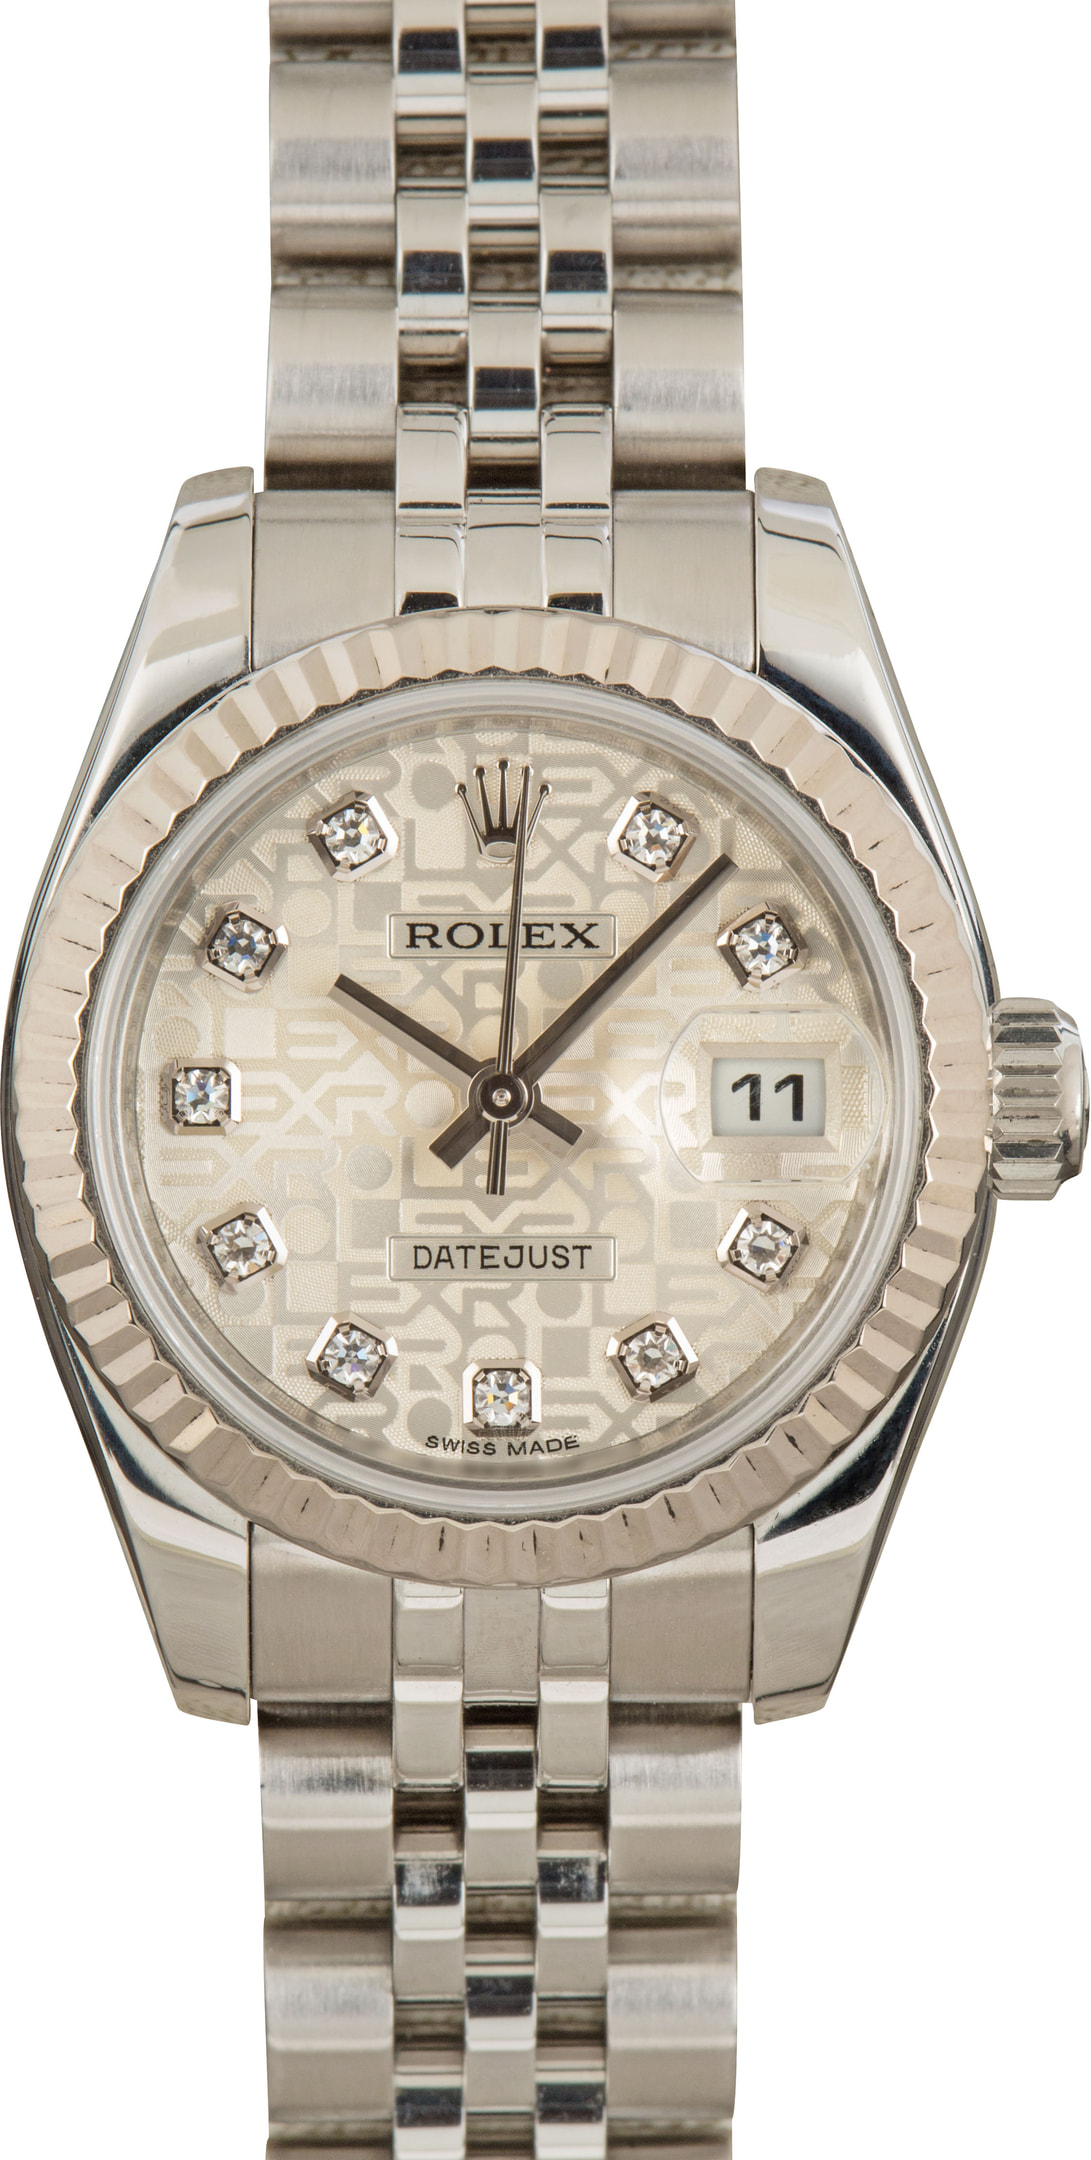 お手軽価格で贈りやすい ROLEX - ROLEX DATEJUST 179174 希少な26mm及びシェルフェイス 腕時計 - daloon.com